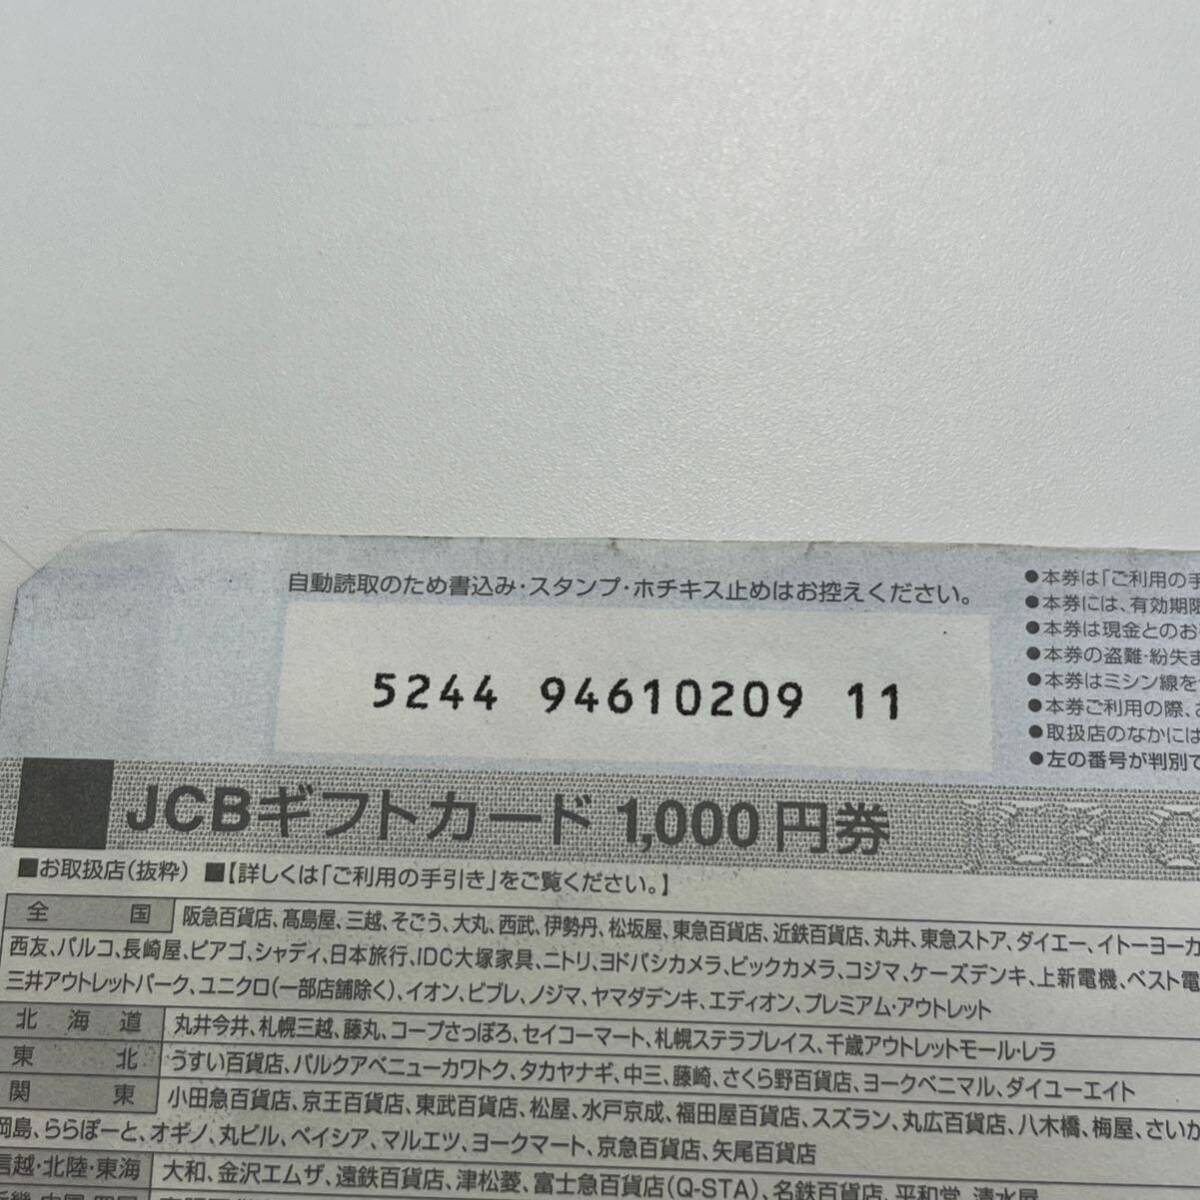 【TN0430】JCB ギフト券 GIFT CARD 未使用 1000円 1枚 折れあり ギフトカード 商品券 _画像4